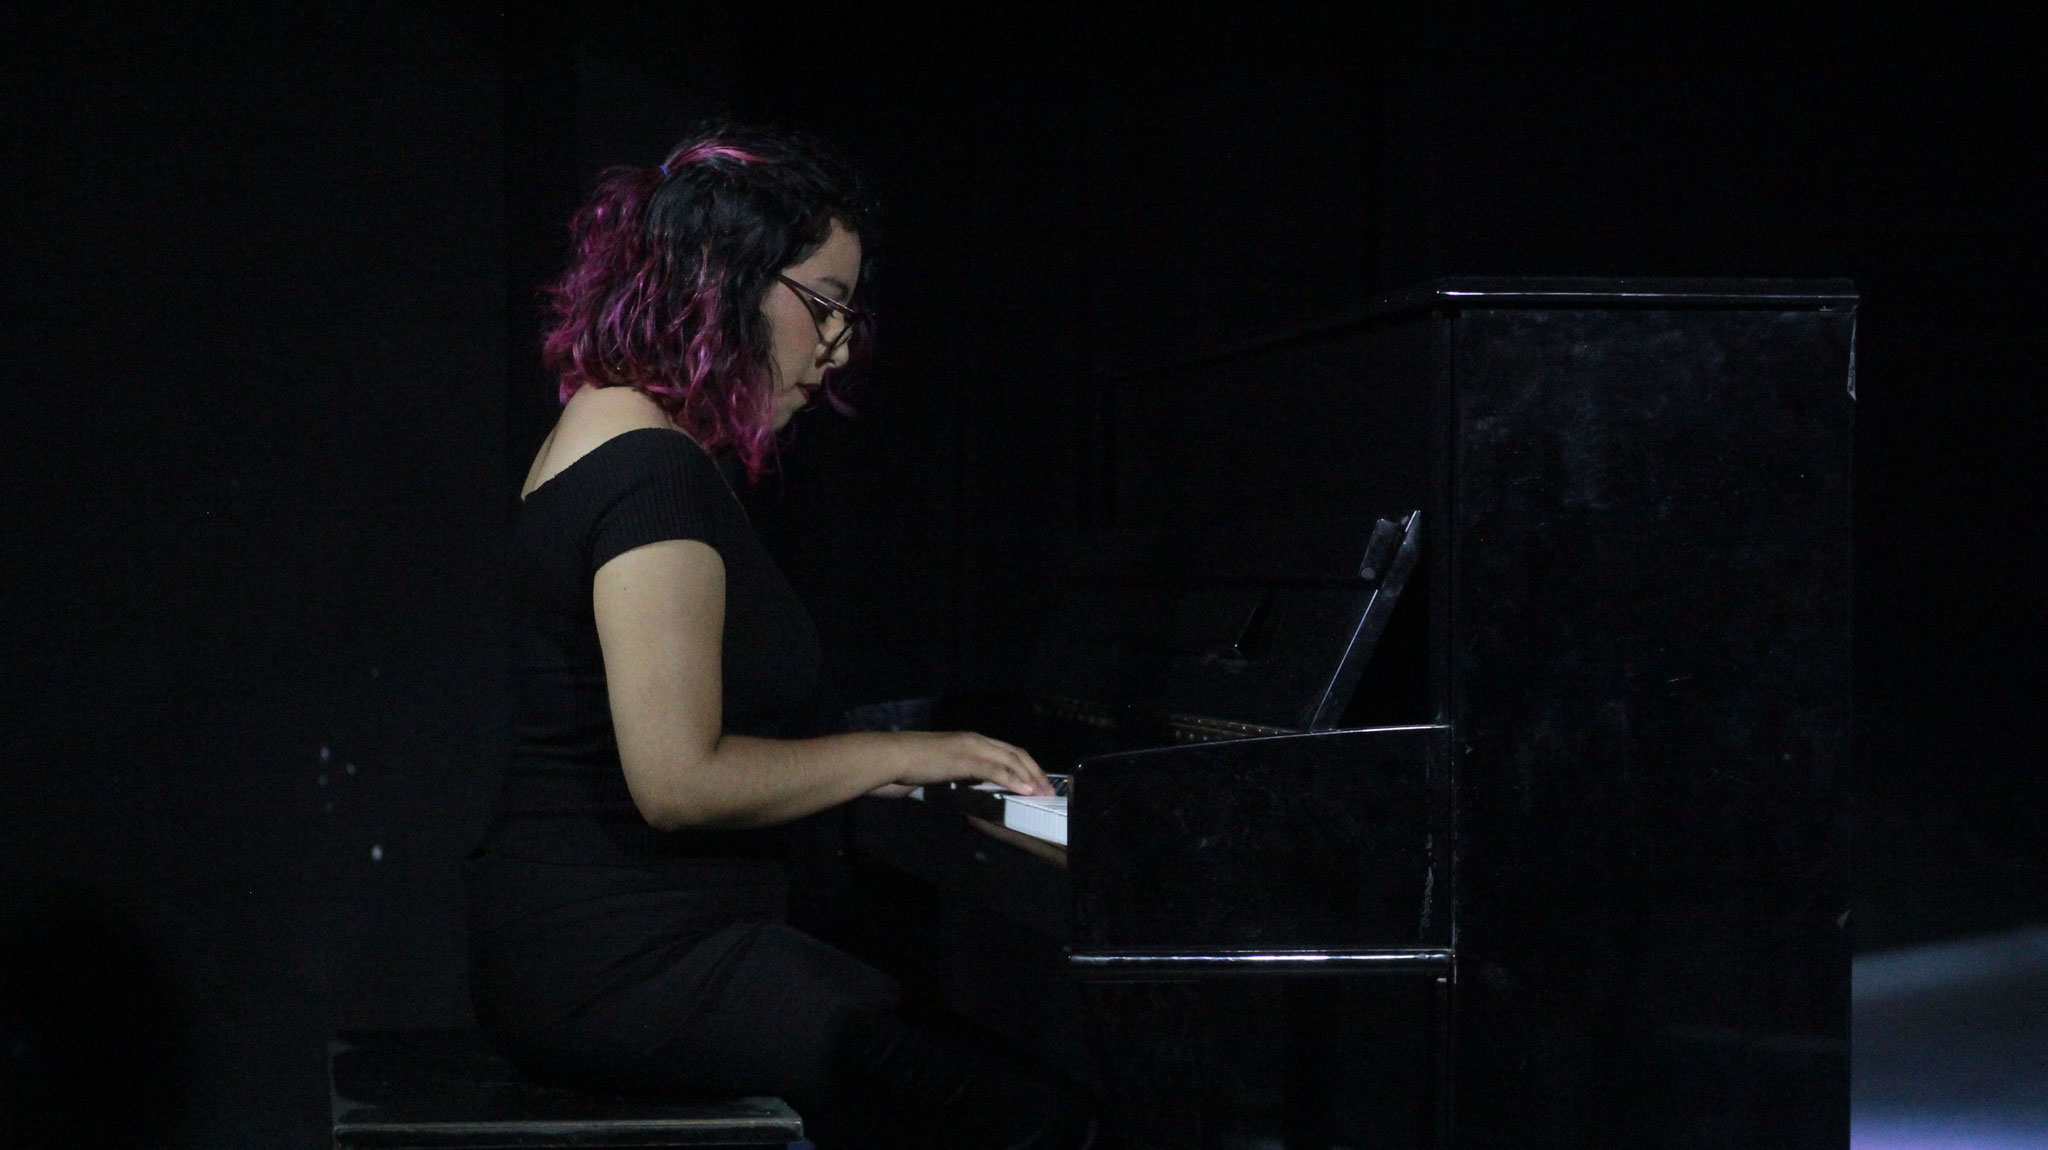 Presentación de música "Recital de música" dirigido por Lisa Rodríguez